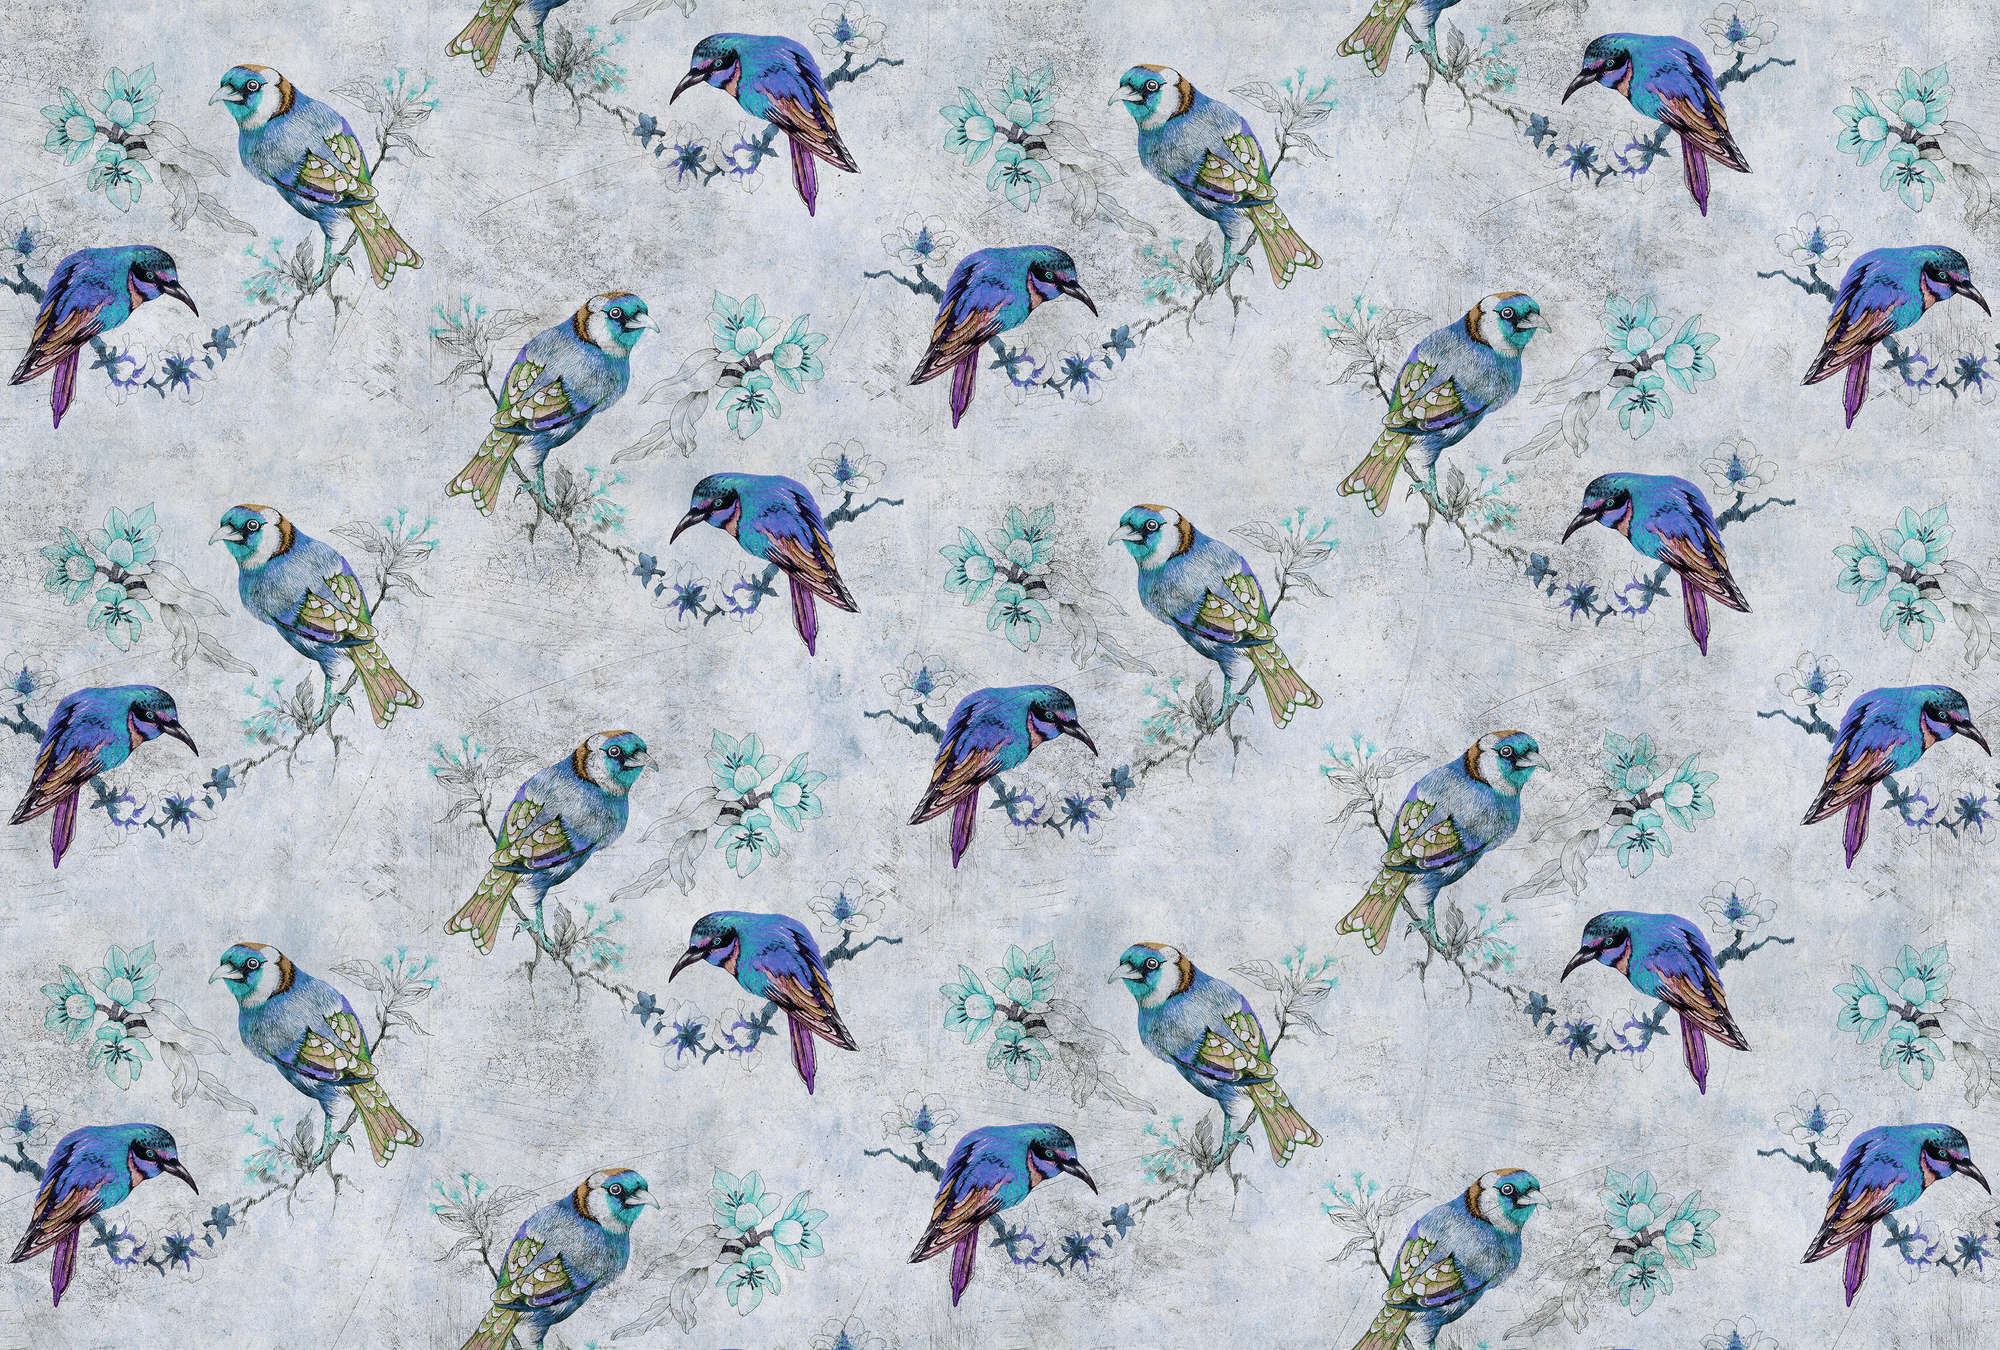             Love birds 1 - Papier peint motif oiseaux style dessin à texture rayée - bleu, gris | Intissé lisse mat
        